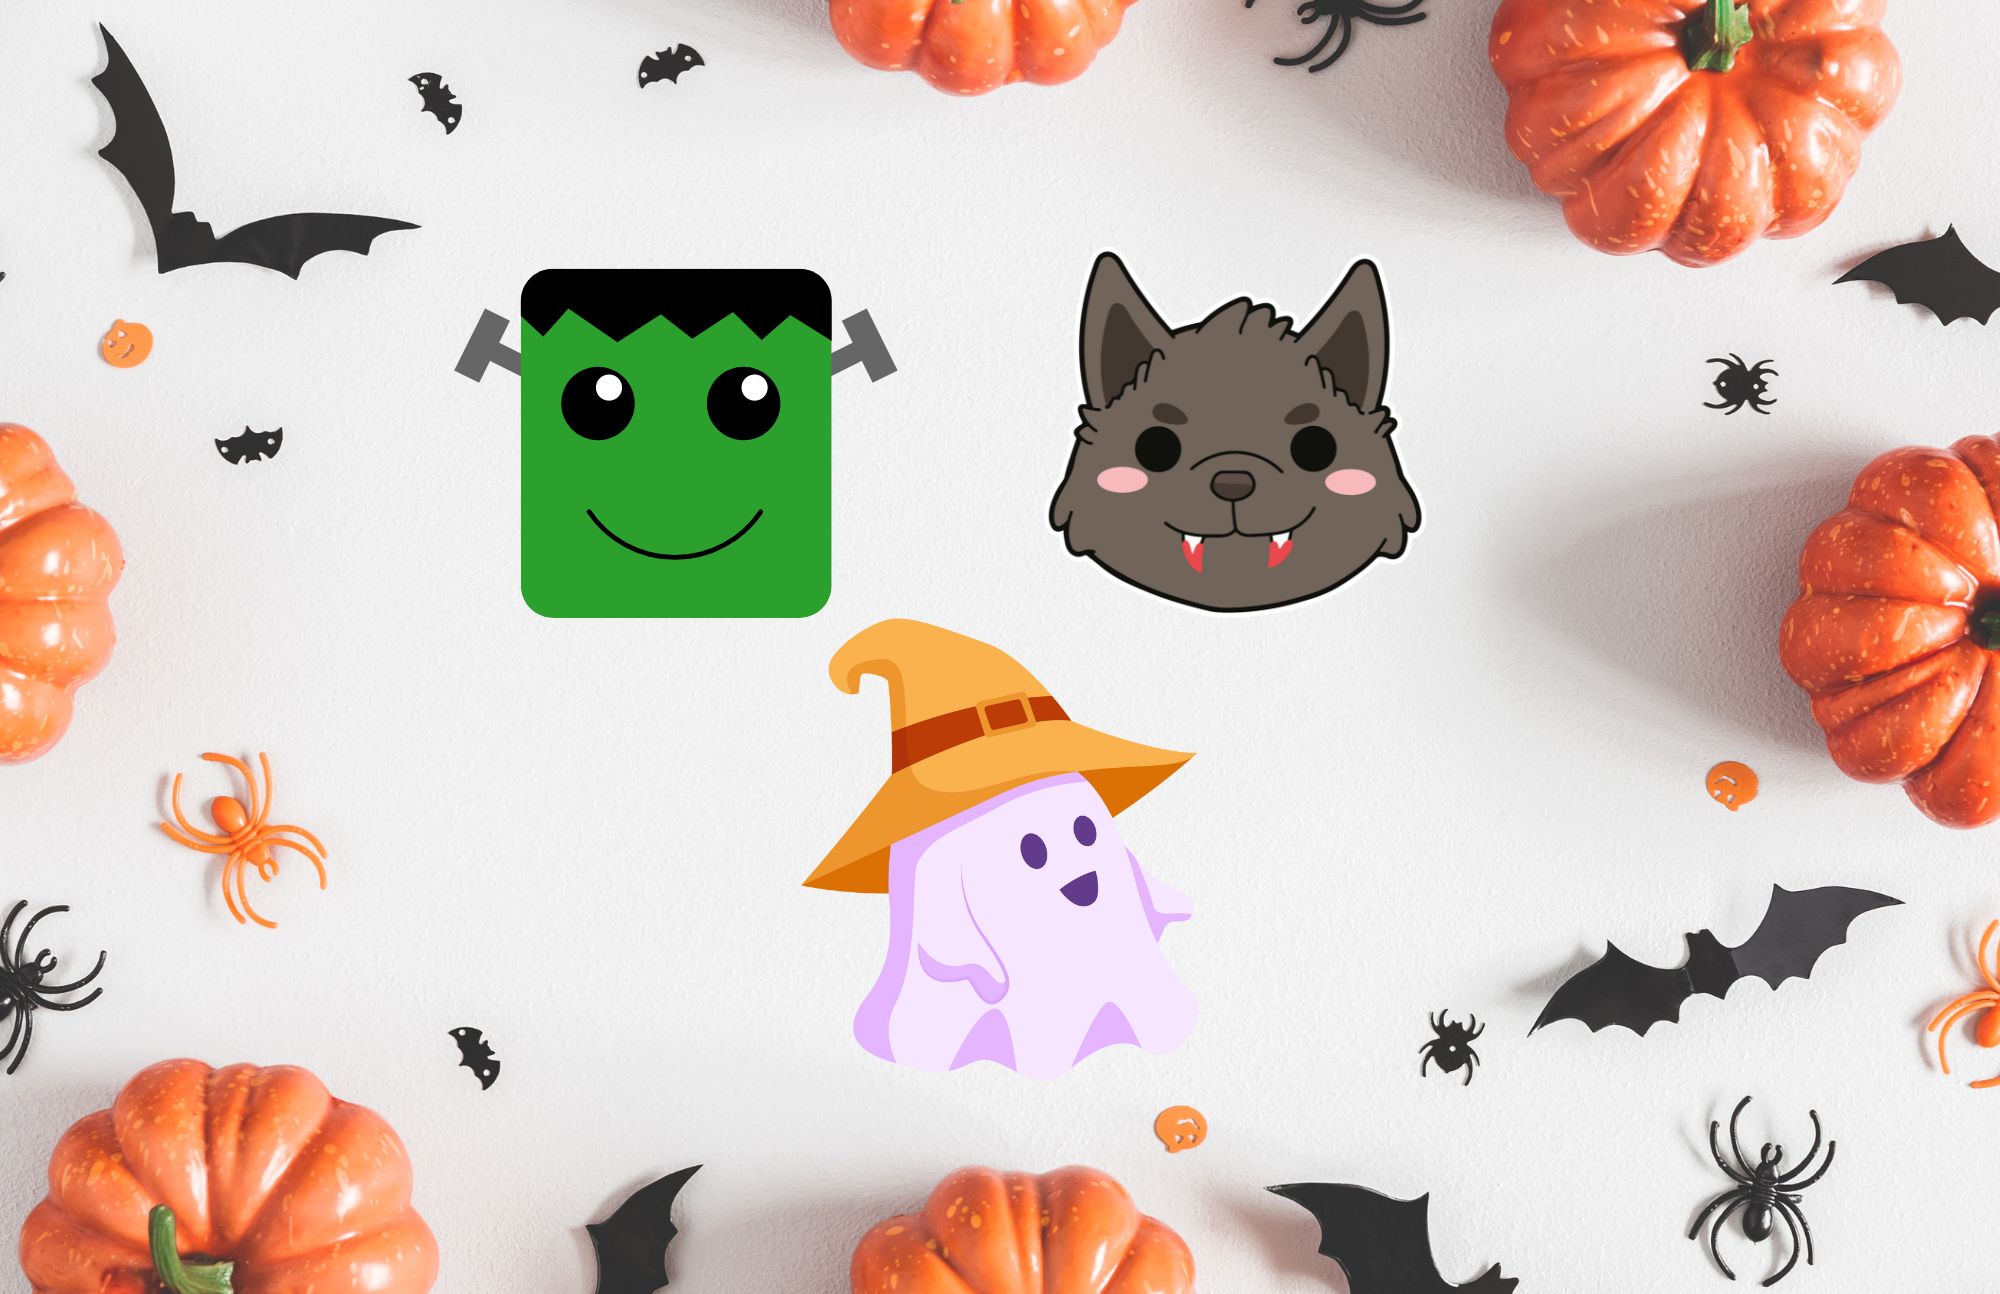 Frankenstein, werewolf, & Ghost in a witch hat on a pumpkin and bat background